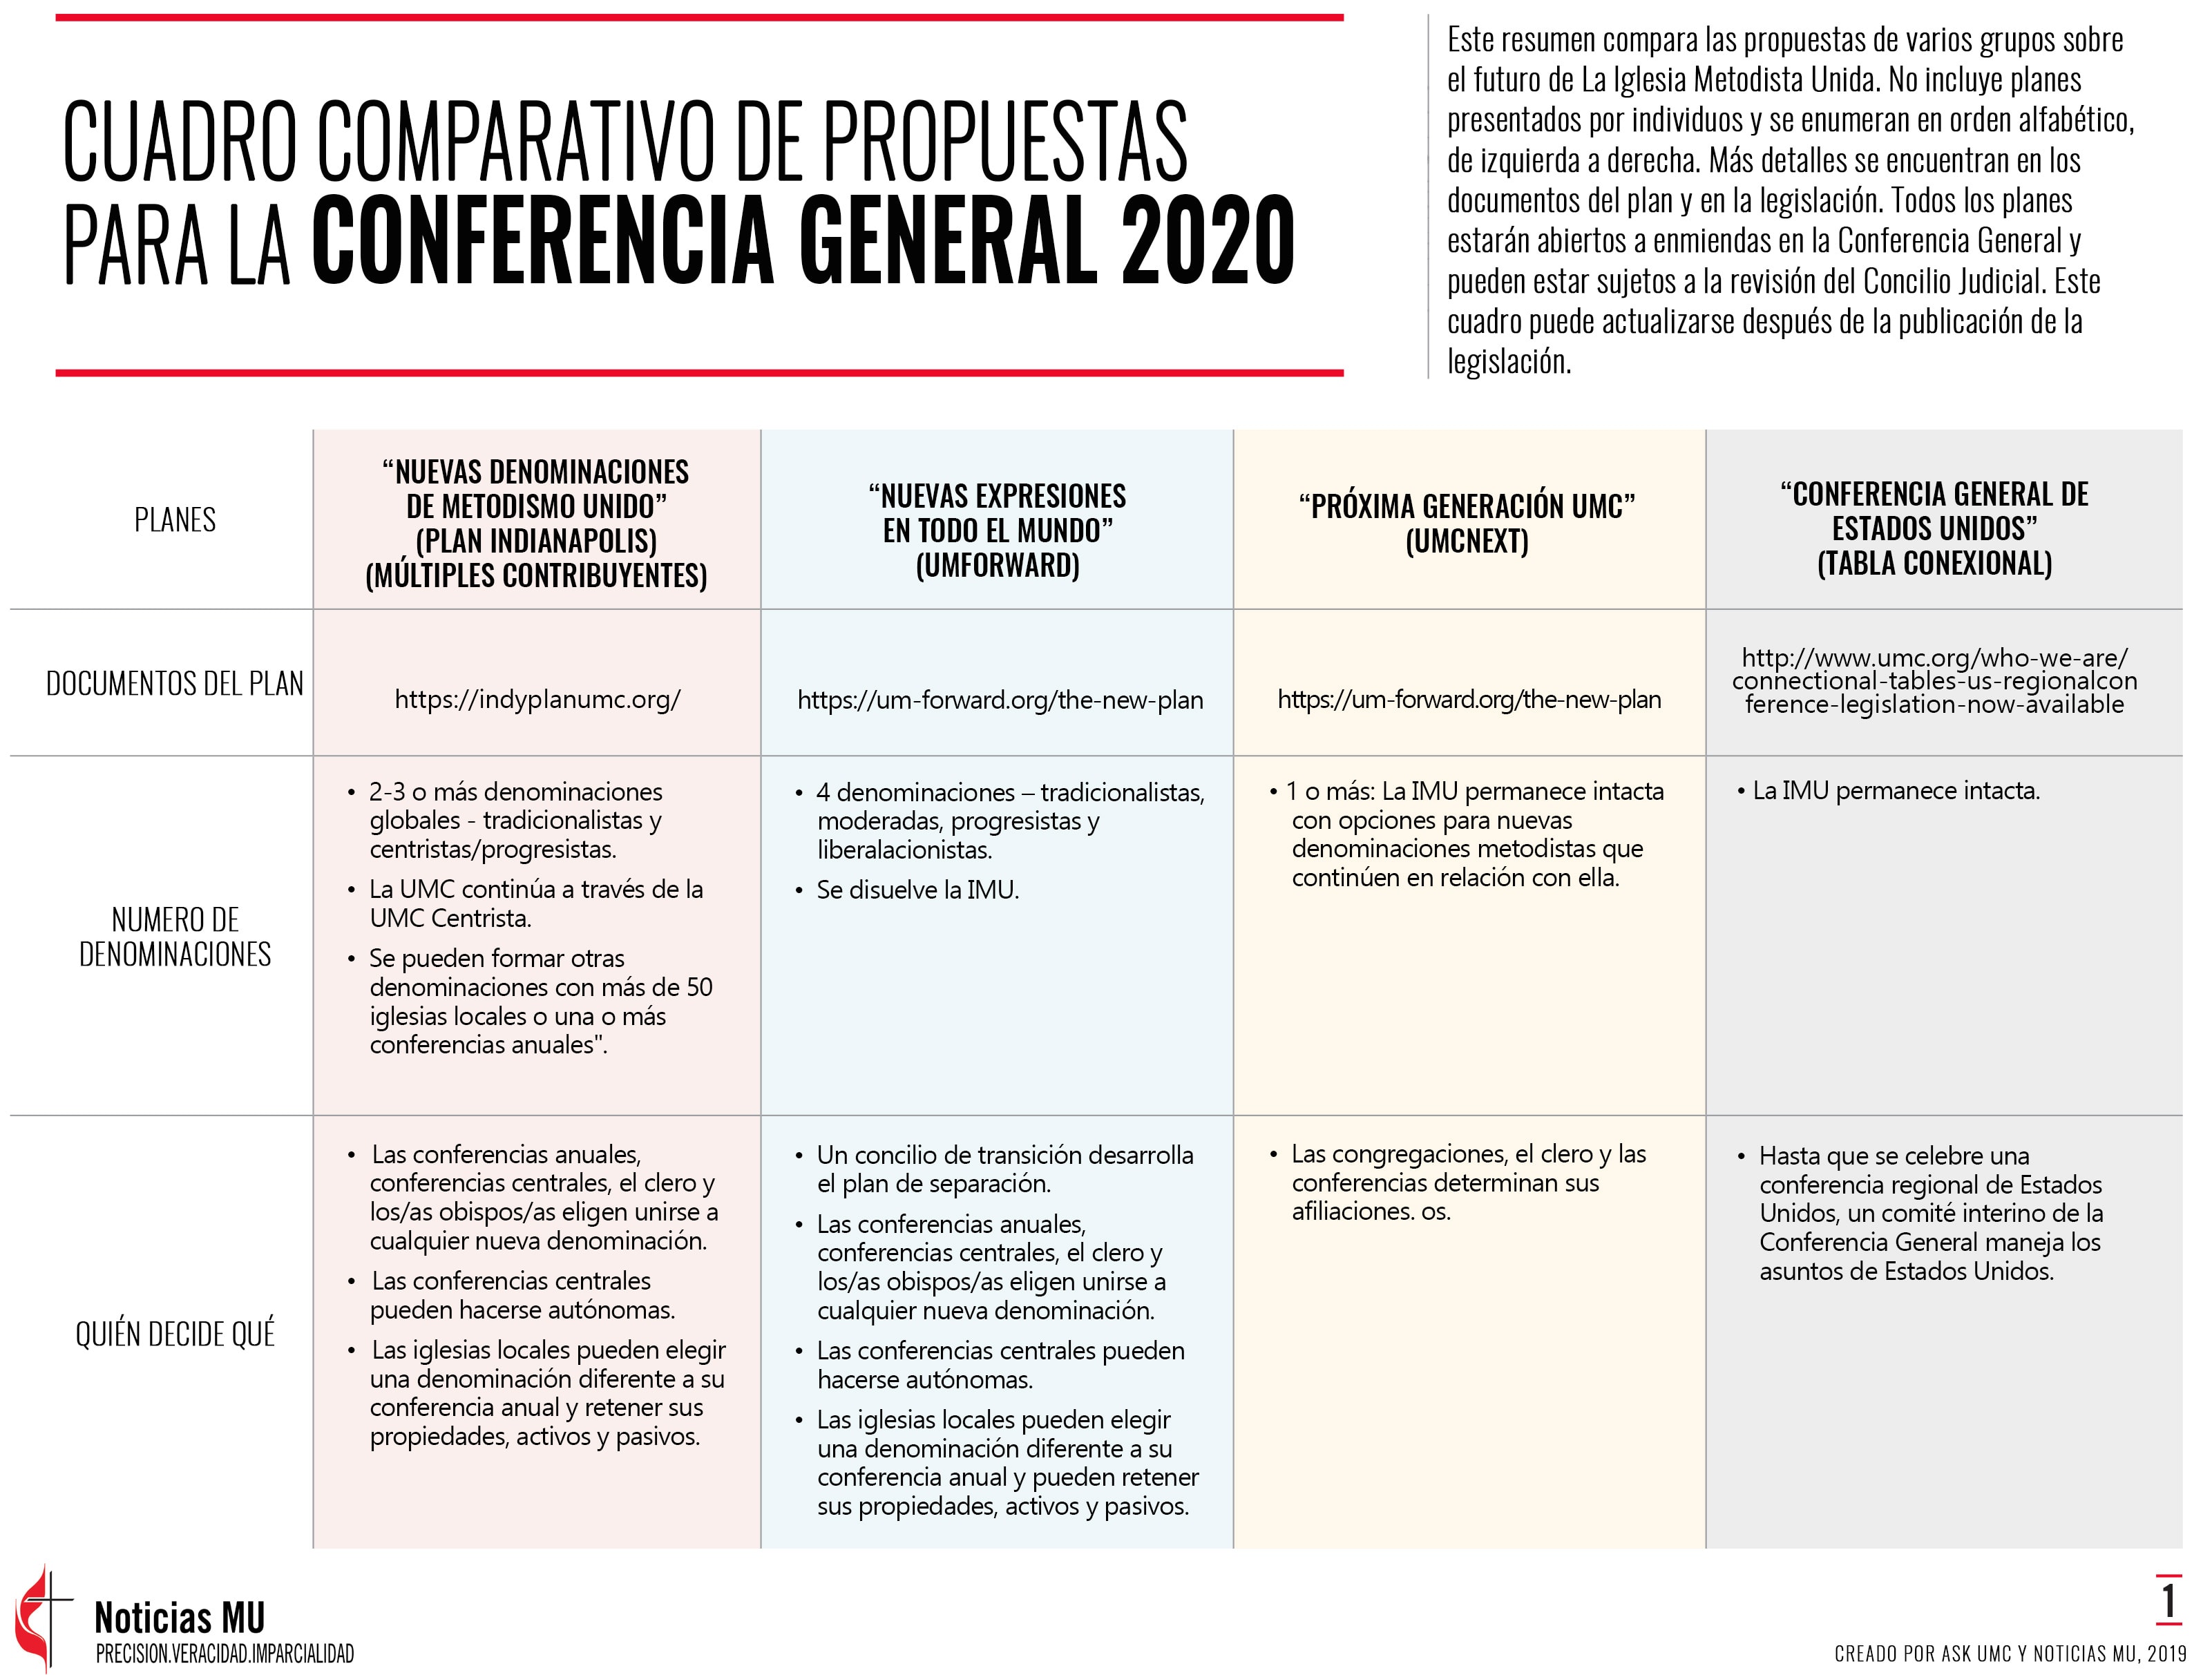 Comparación de los planes para ser considerados en la Conferencia General 2020. Tabla creada por ASK UMC y Noticias MU, 2019.